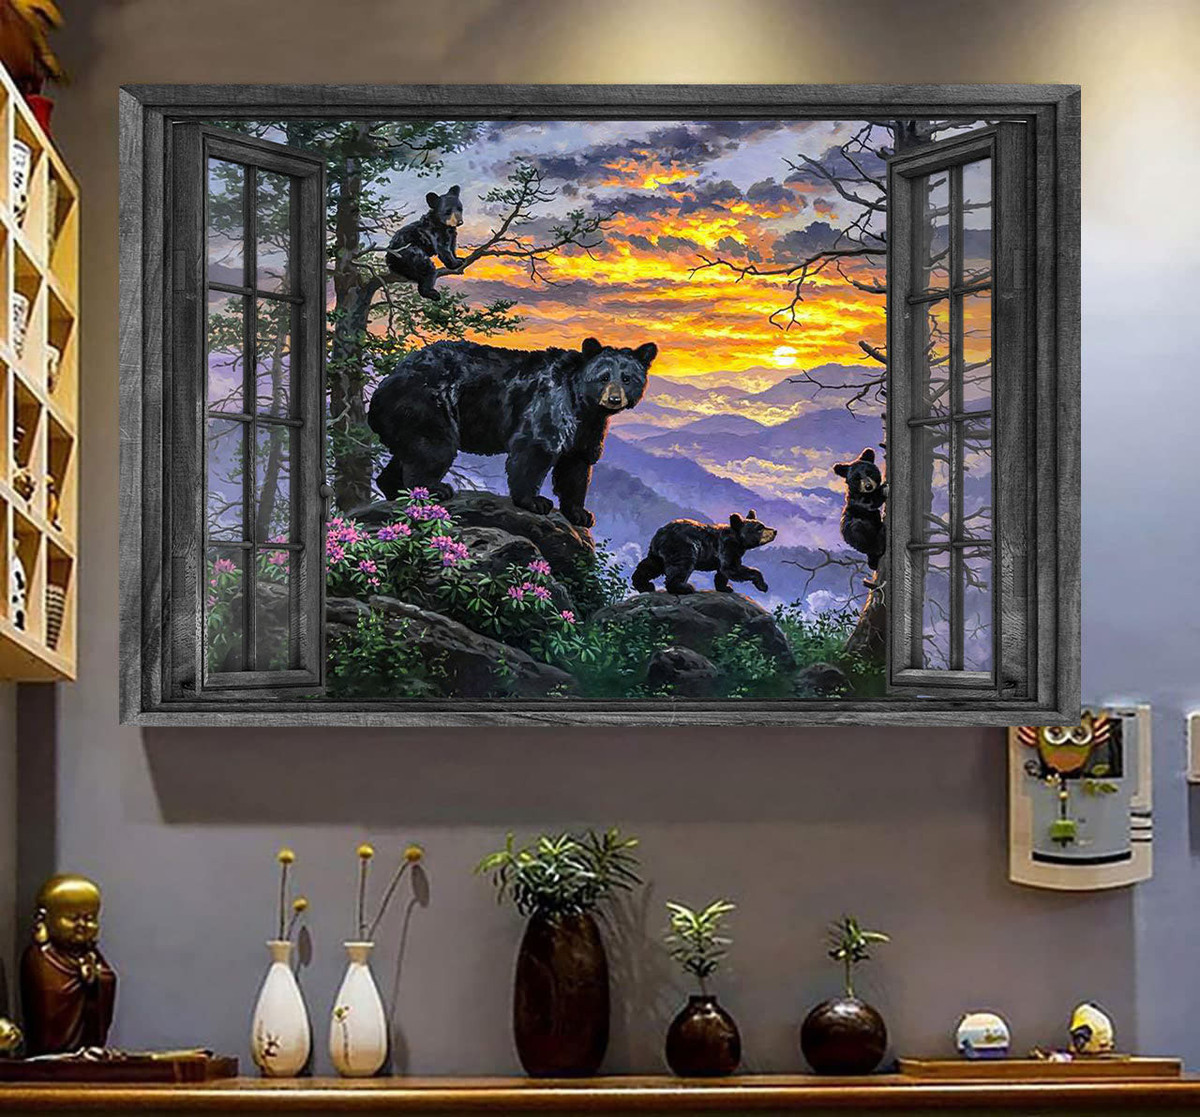 Bear 3D Wall Art Painting Art 3D Wild Animals Lover Bear Babies Home Decoration Landscape Seen Through Window Scene Wall Mural, 3D Window Wall Decal, Window Wall Mural, Window Wall Sticker, Window Sticker Gift Idea 18x30IN